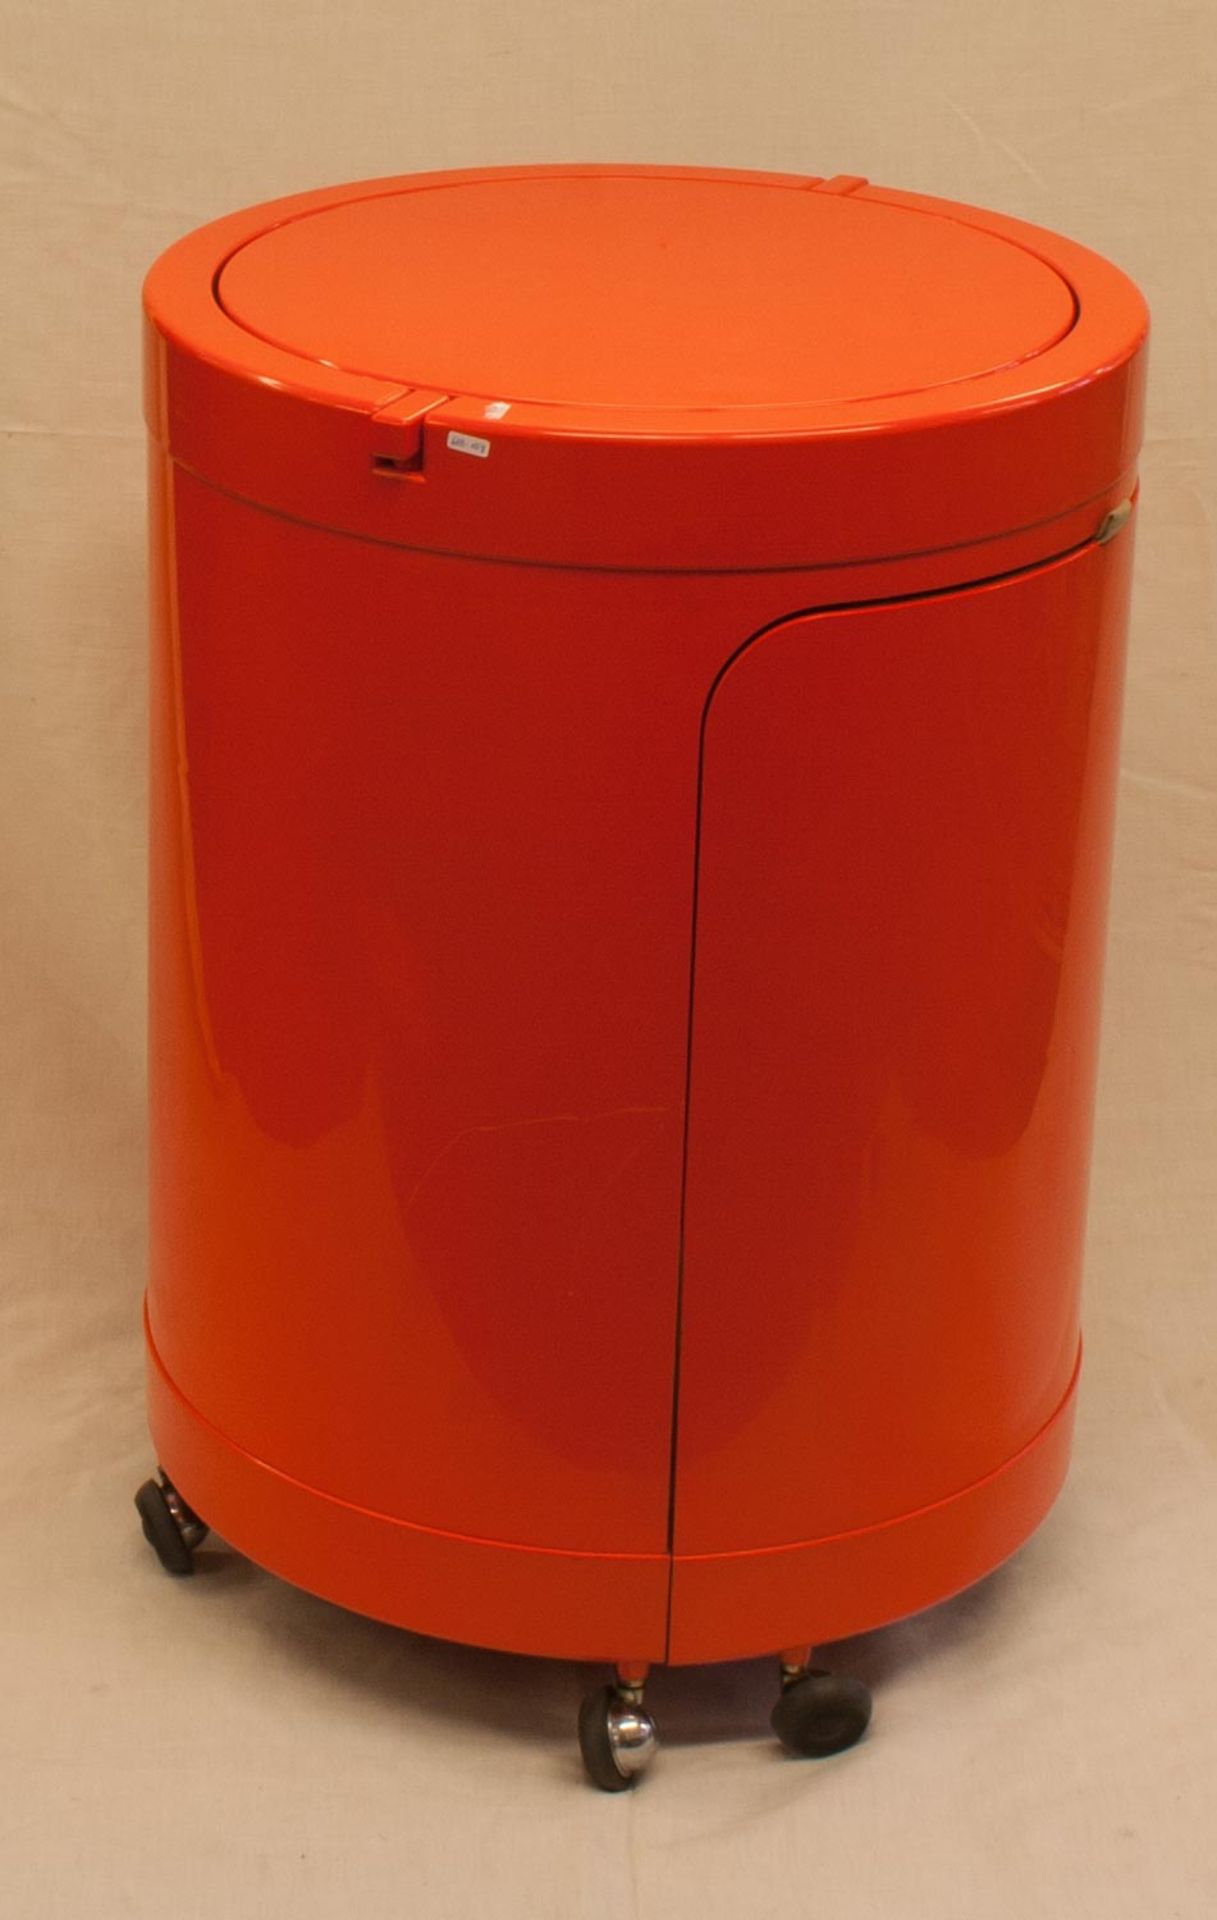 FrisierkommodeItalien, Industriedesign um 1970er Jahre, orangefarbener Kunststoff, tonnenförmig, - Bild 2 aus 2